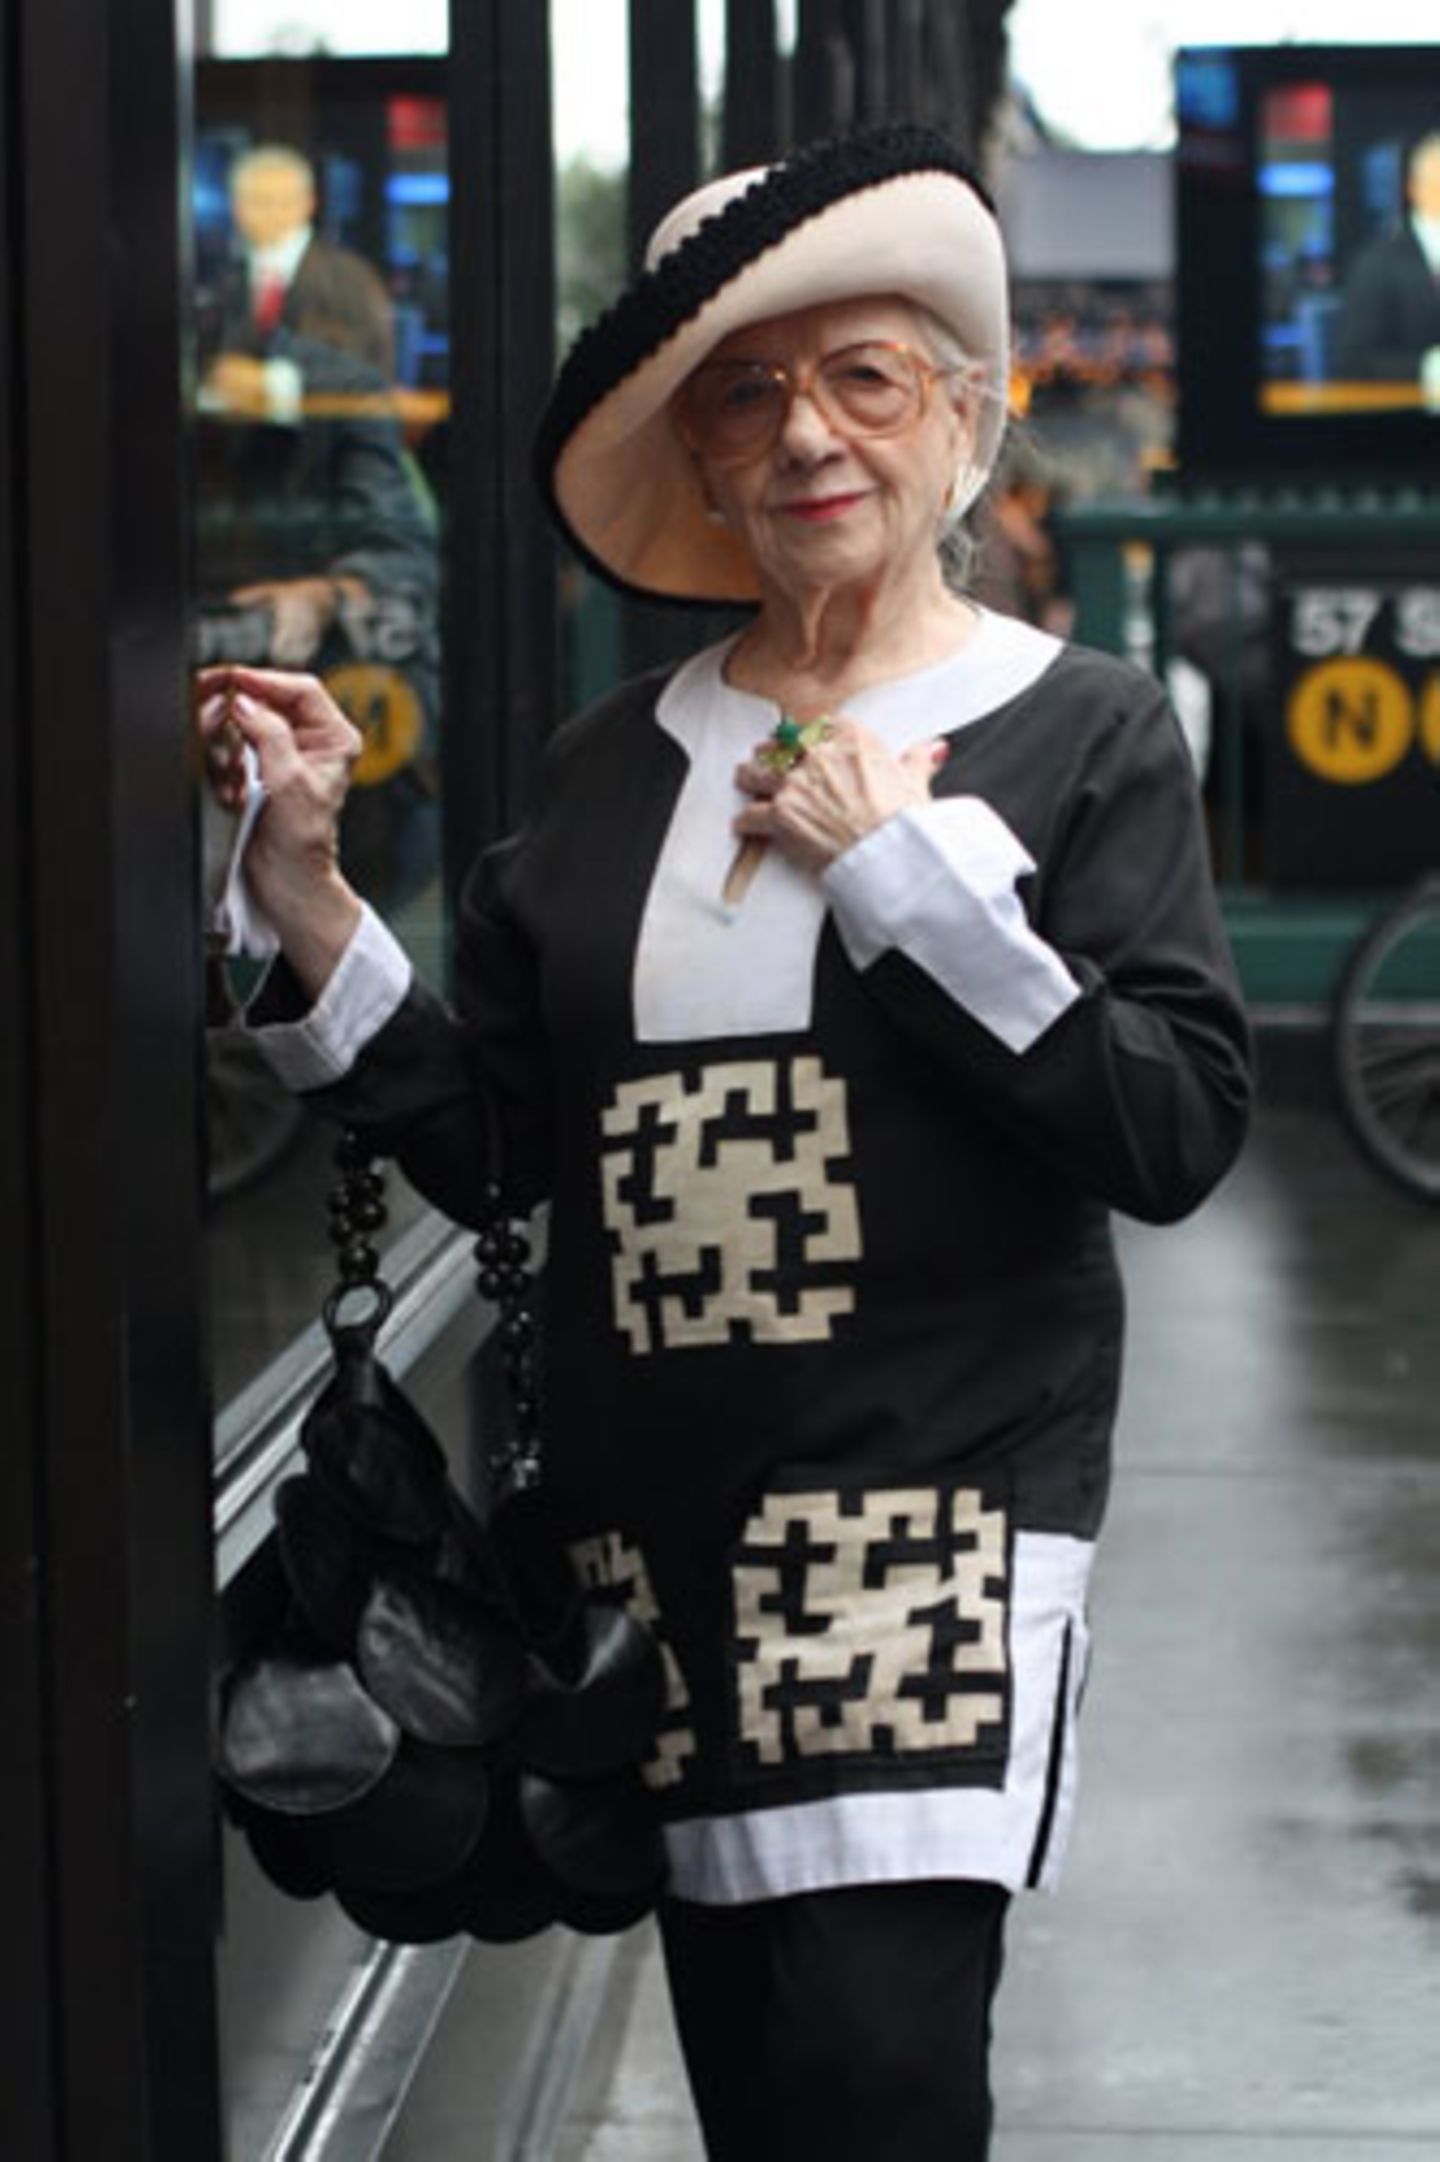 Schwarz, weiß und sehr elegant: Zur gemusterten Tunika trägt diese New Yorkerin einen Hut mit schwarzer Borte, eine schwarze Tasche und eine übergroße Brille.